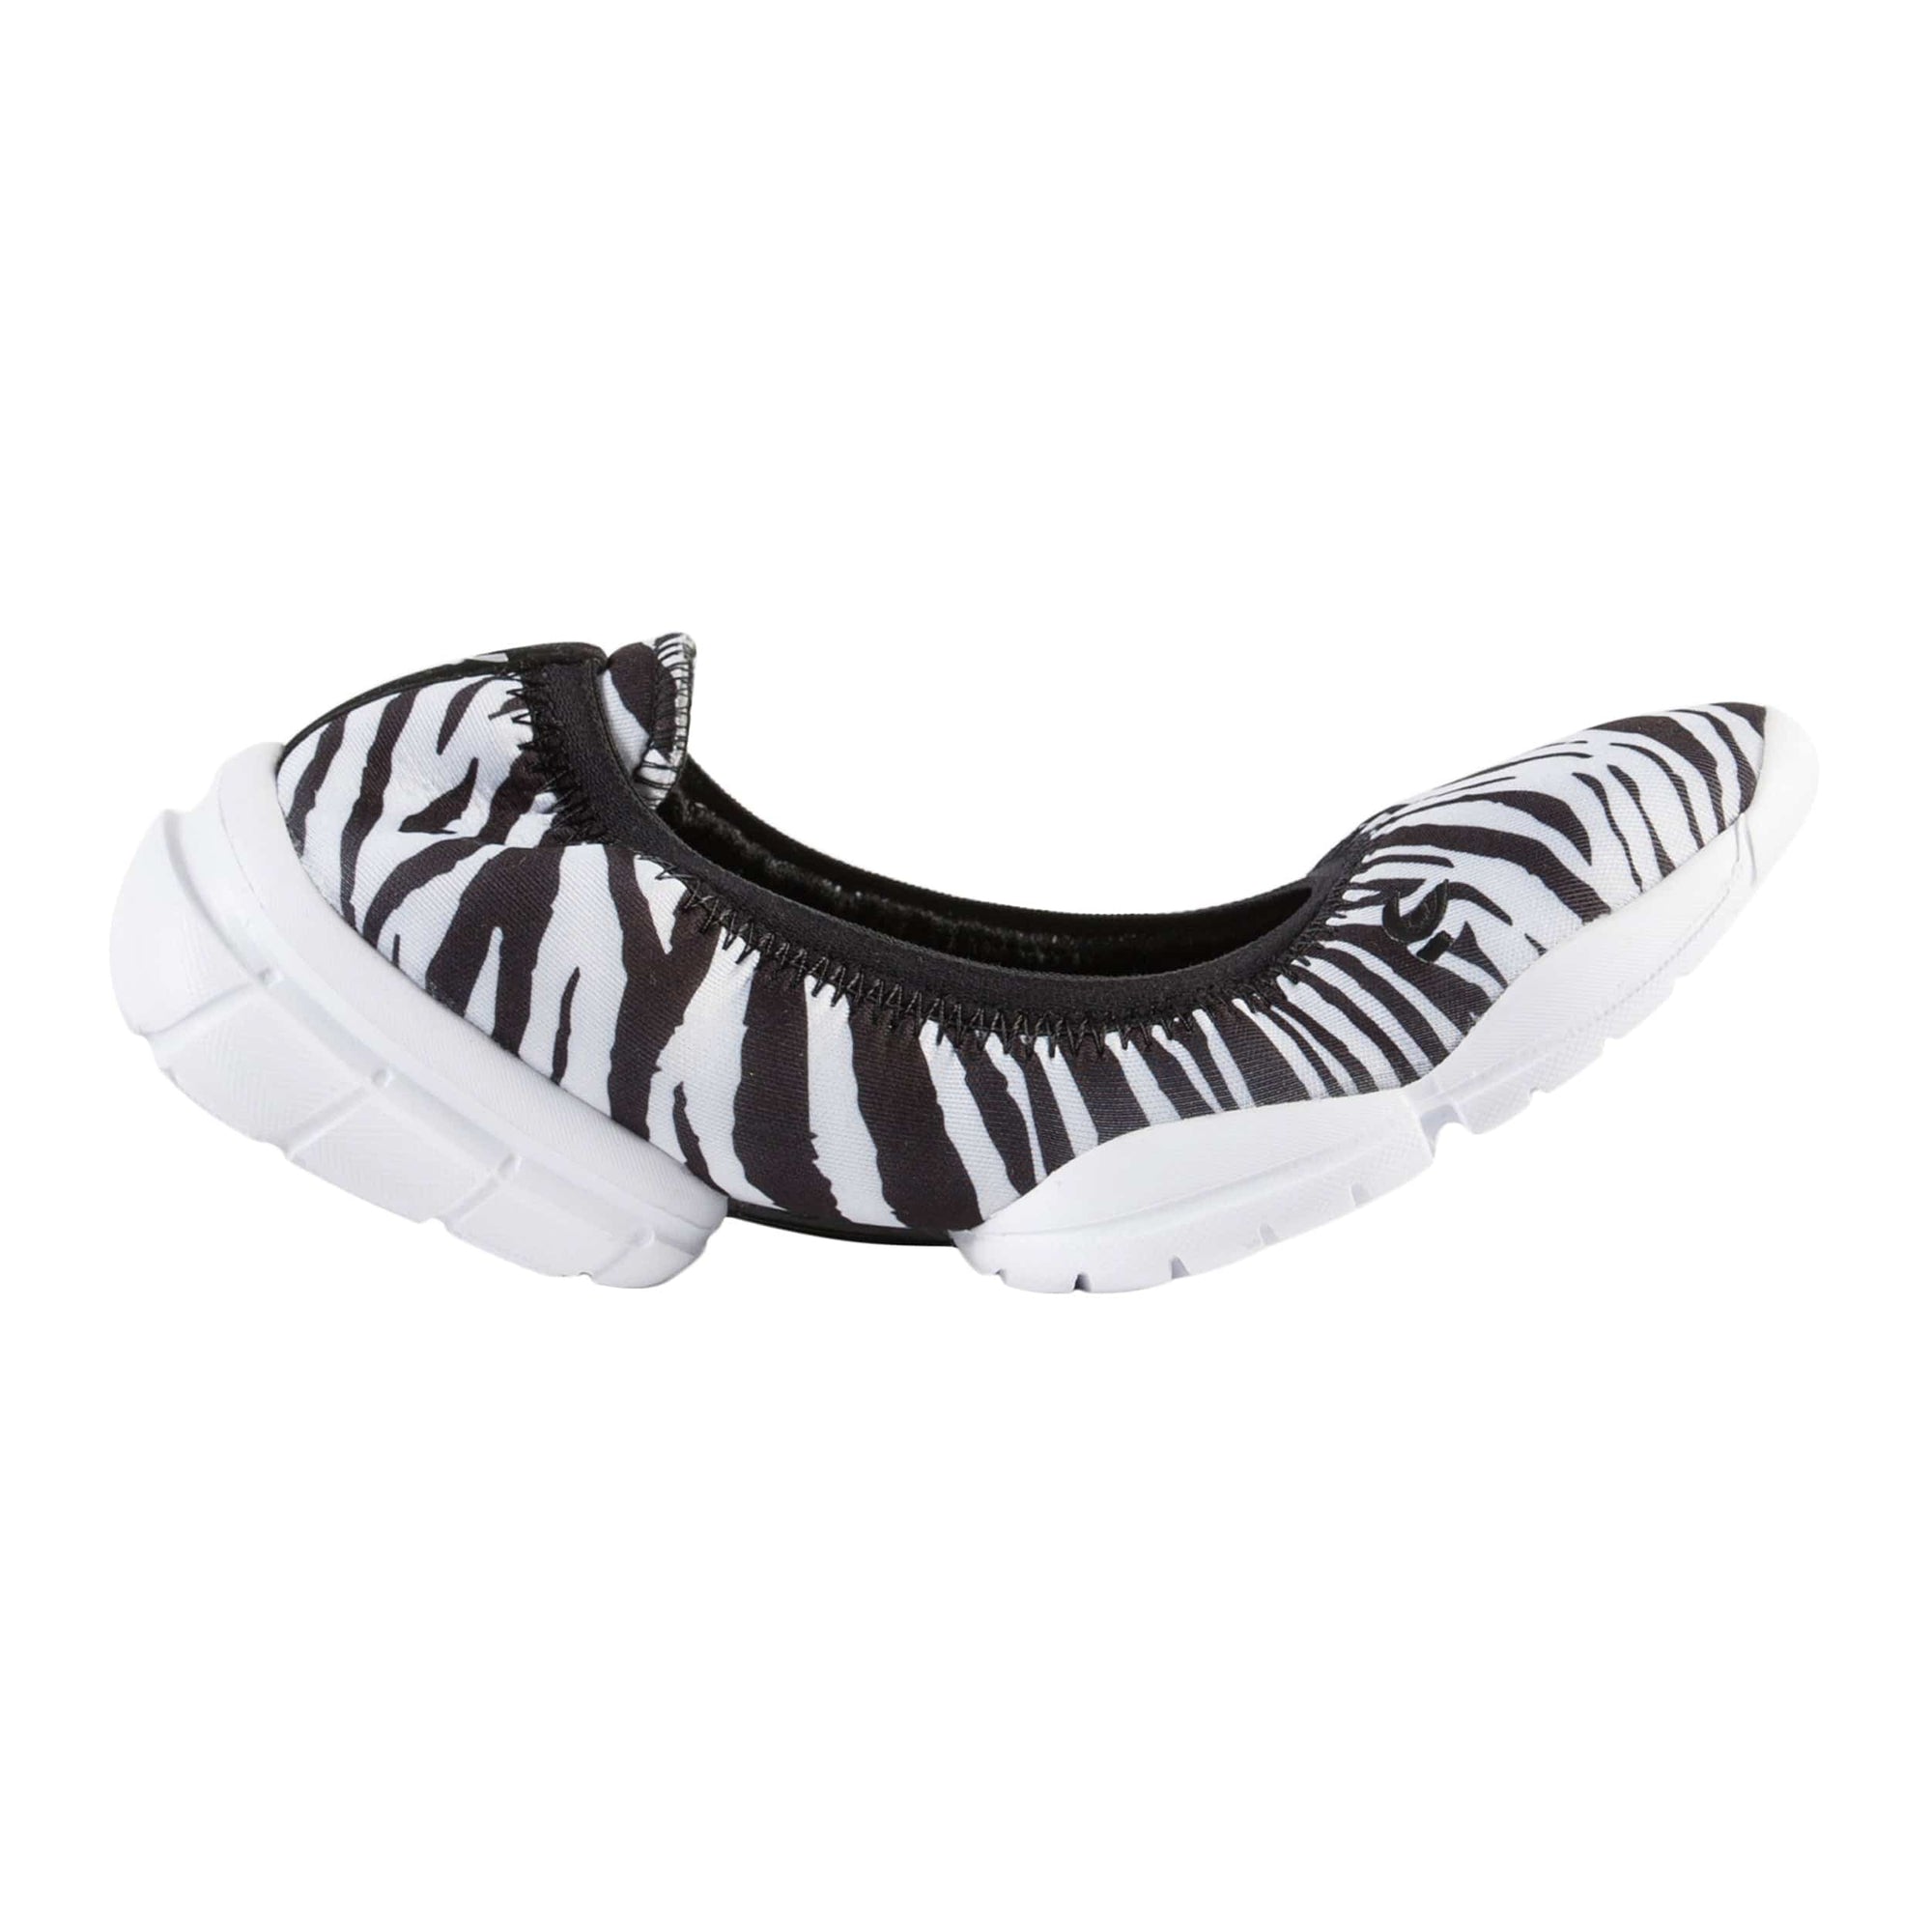 3Pro Ballerina Shoes - Zebra Pattern 1